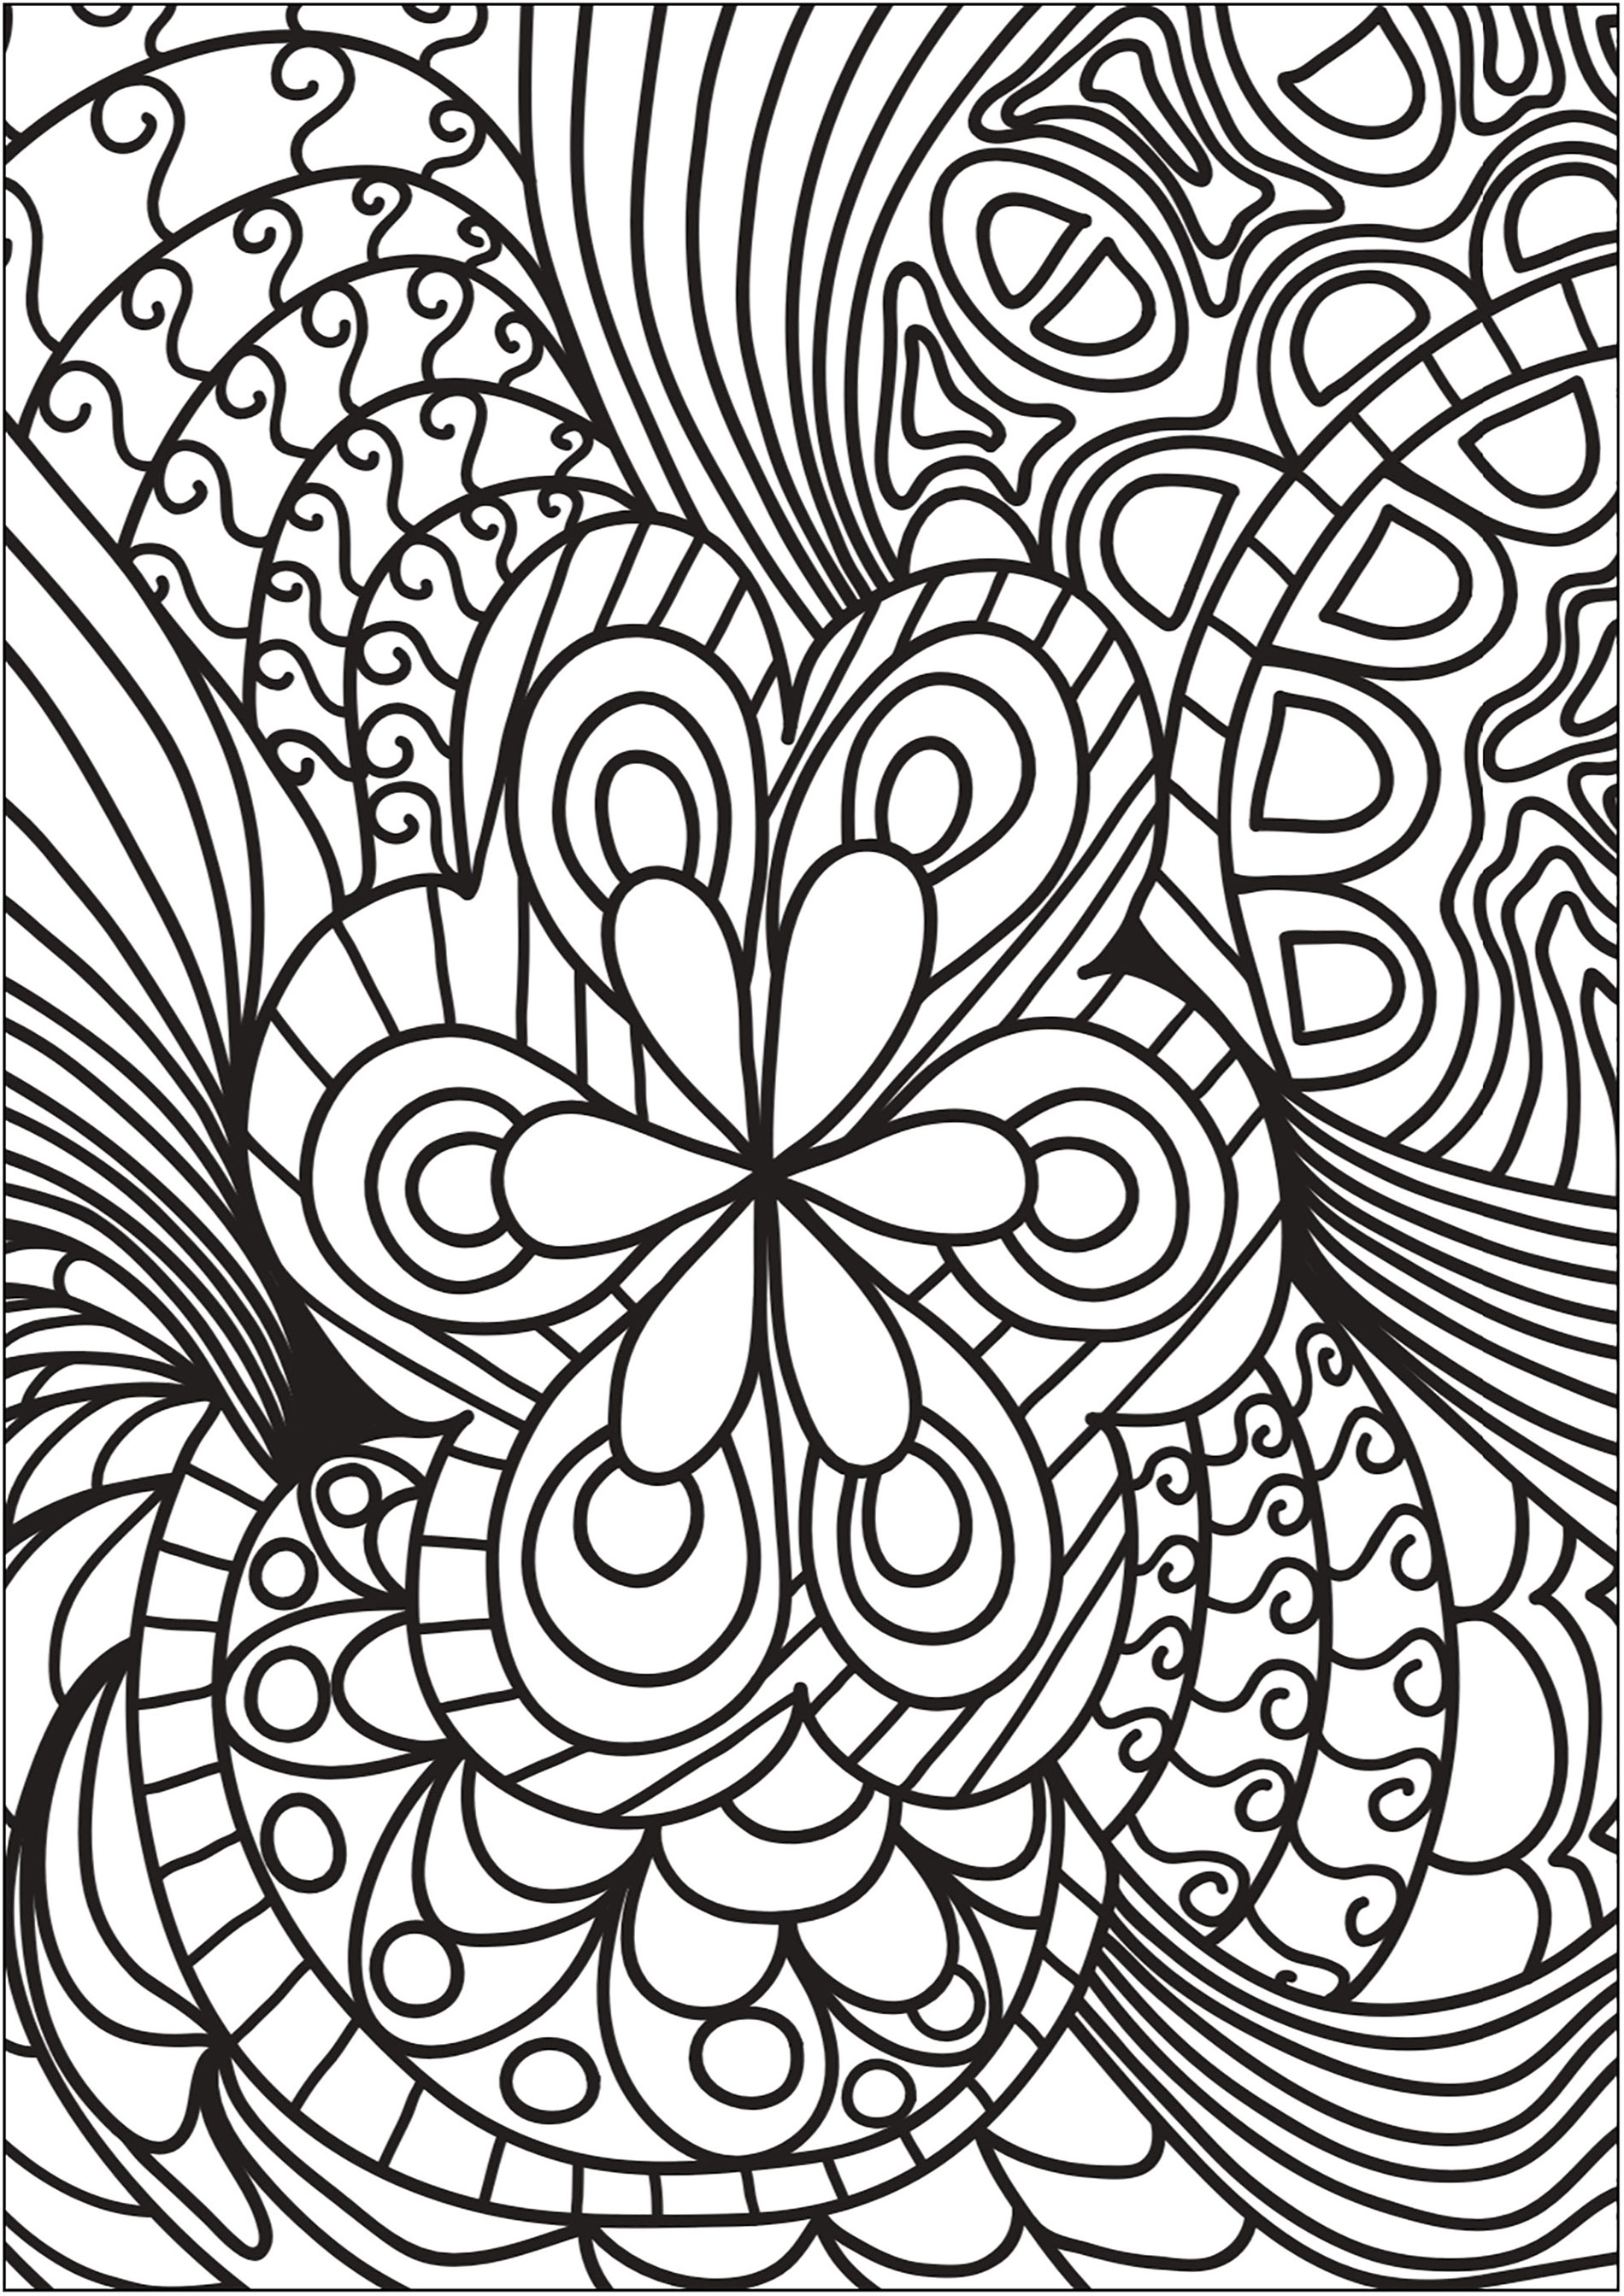 Doodle bonito com uma flor central